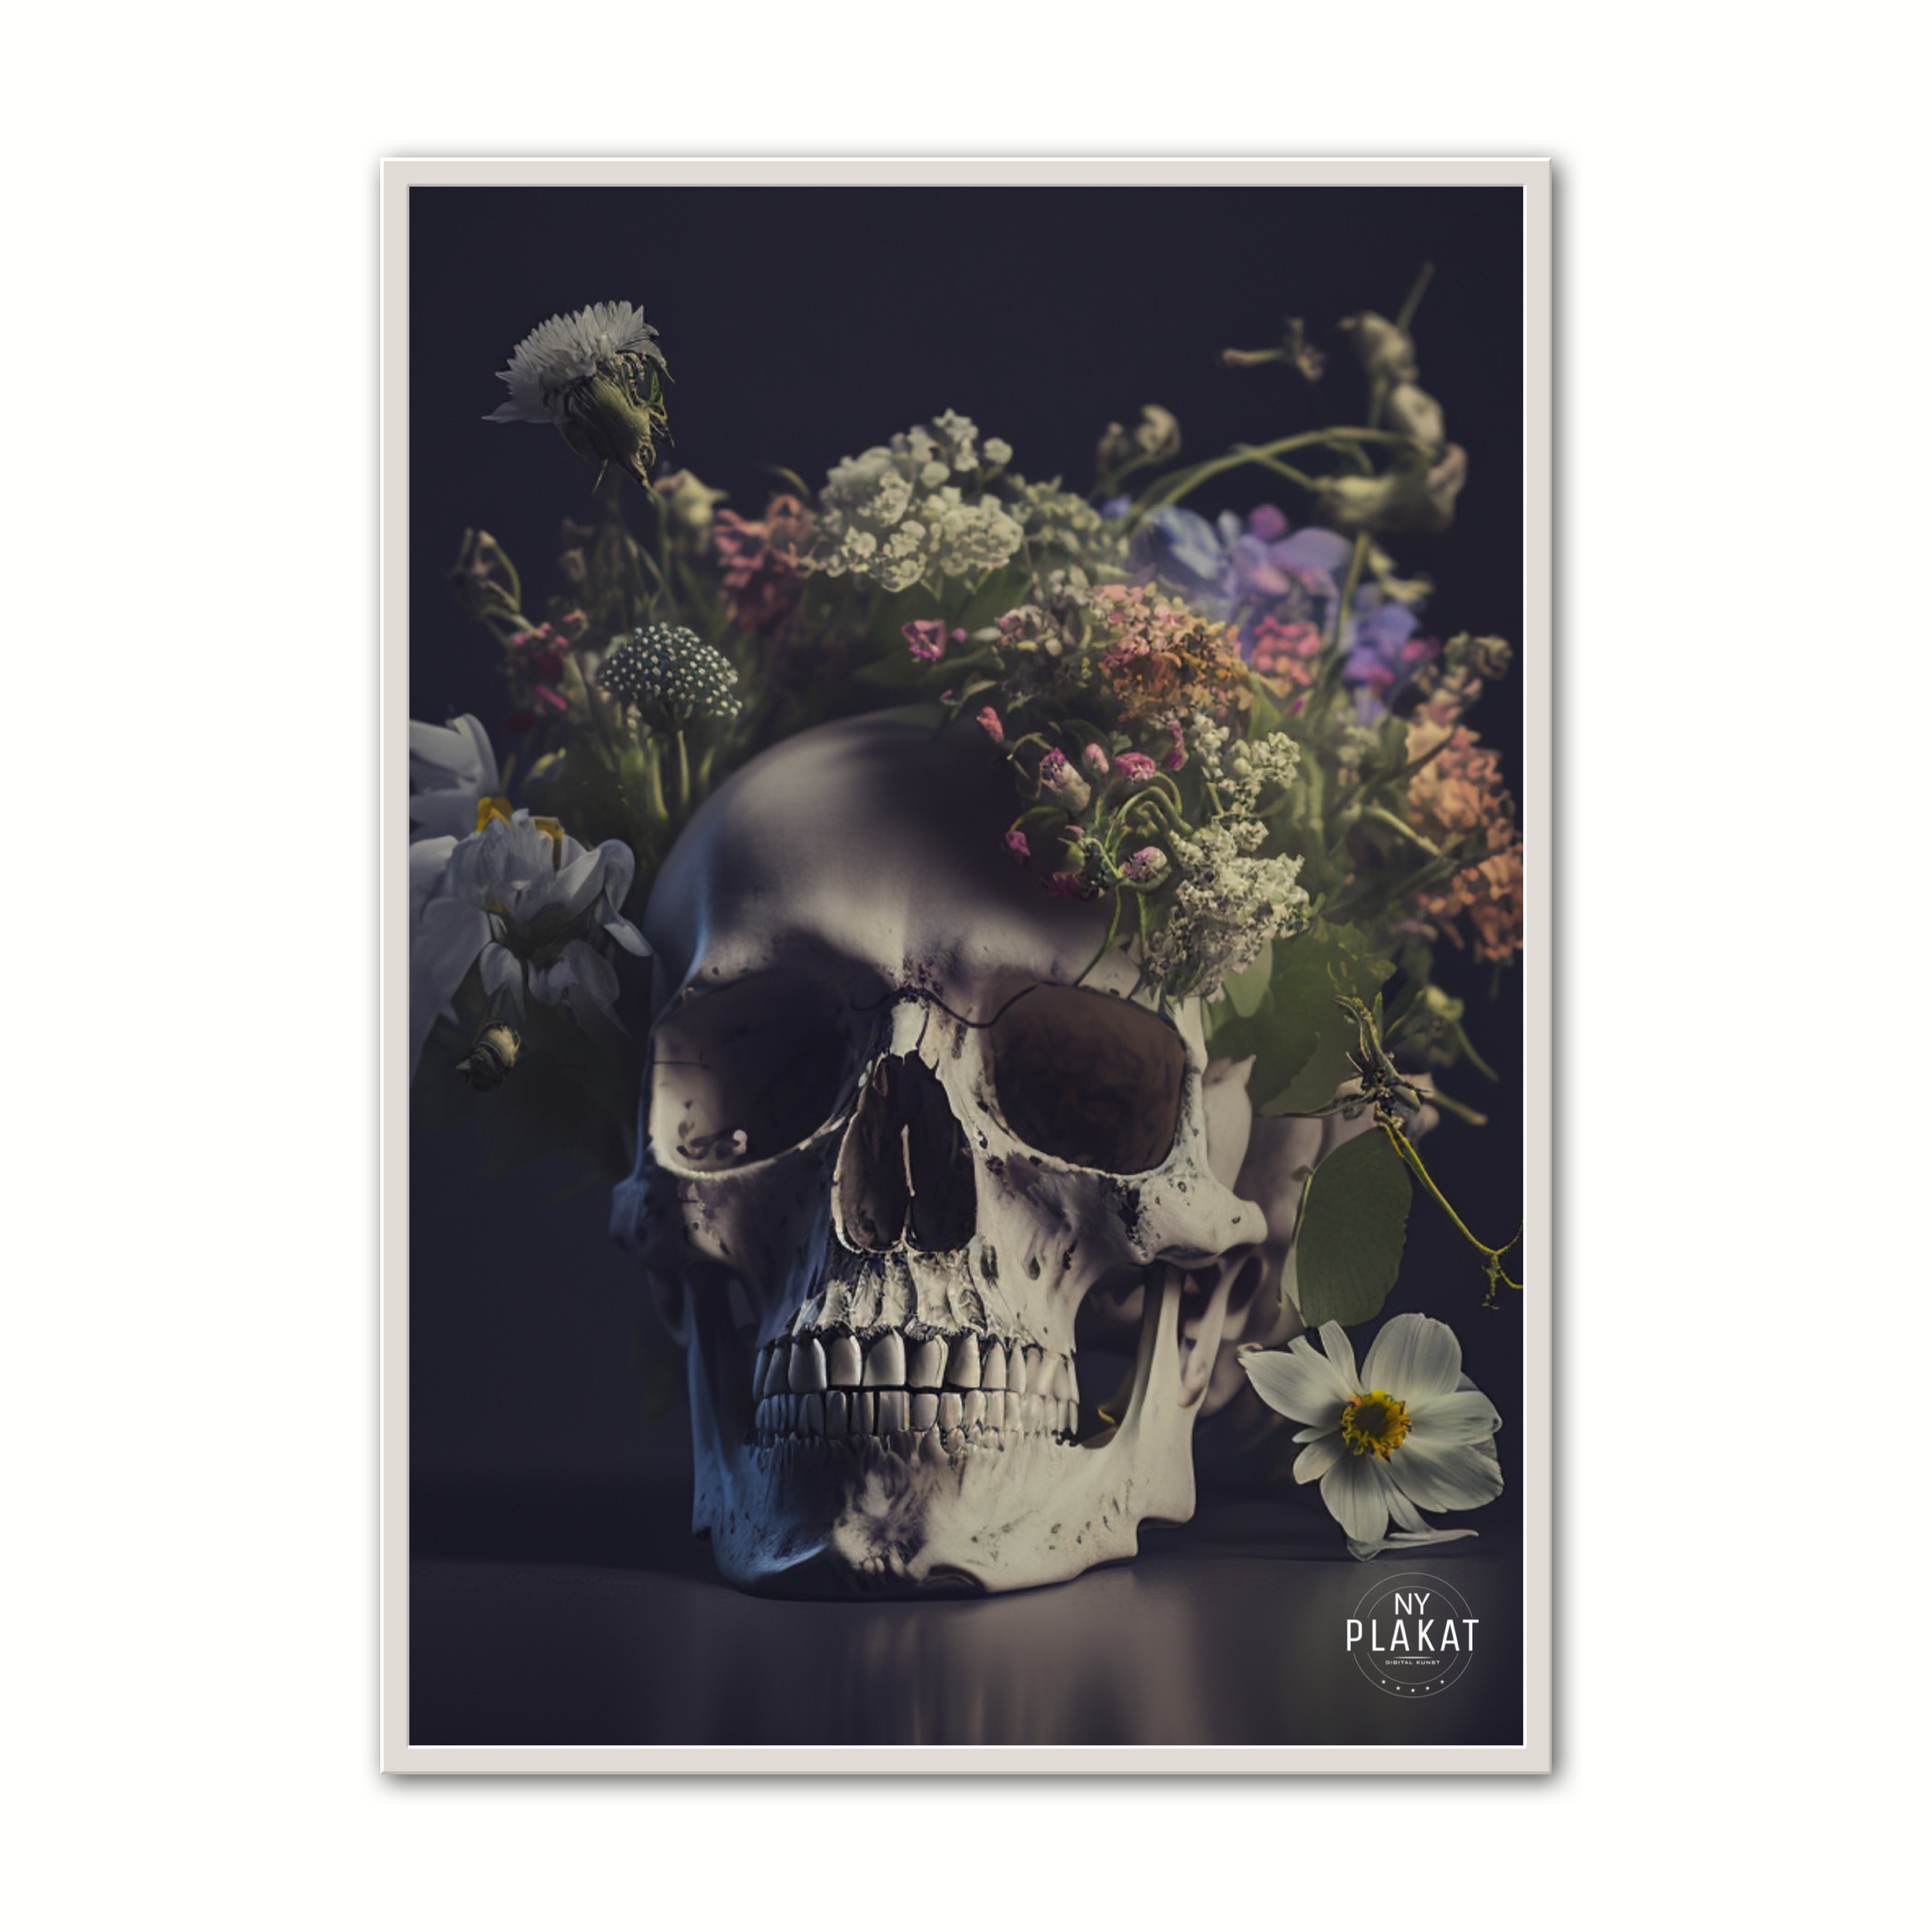 Billede af Plakat med Skull With Flowers No. 3 21 x 29,7 cm (A4)